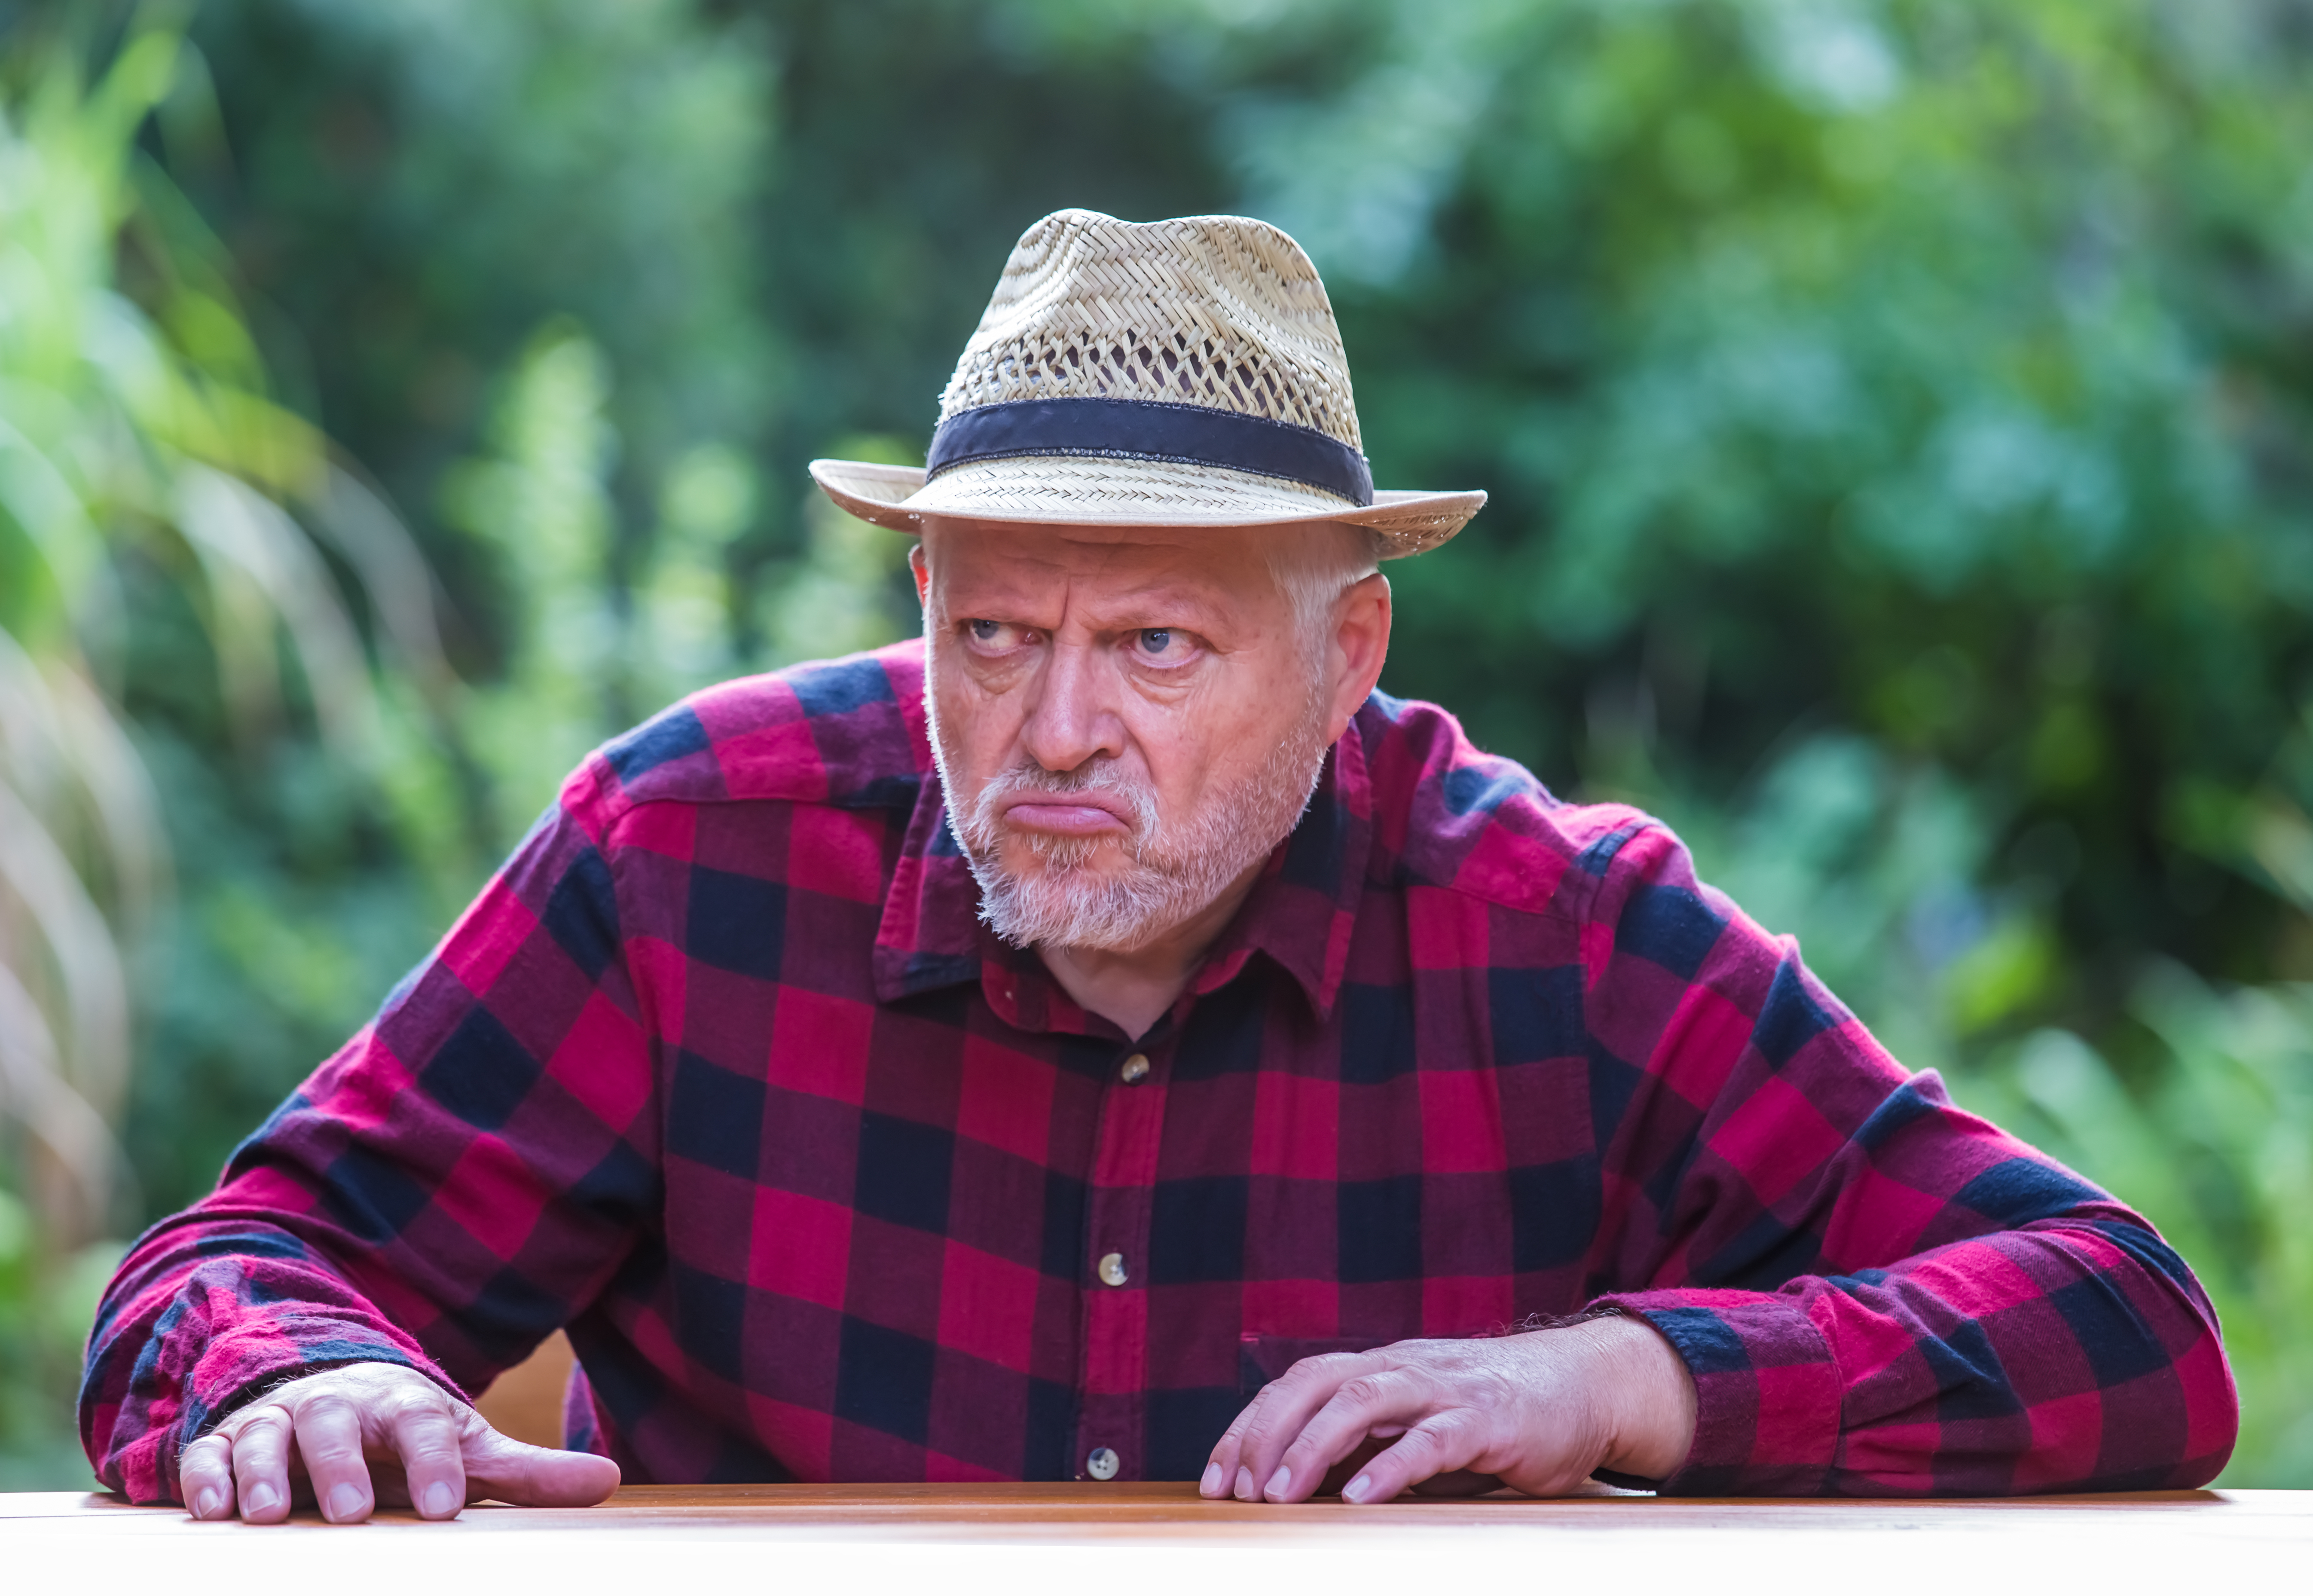 Un homme âgé coiffé d'un chapeau est assis avec mauvaise humeur à une table dans le jardin. | Source : Shutterstock